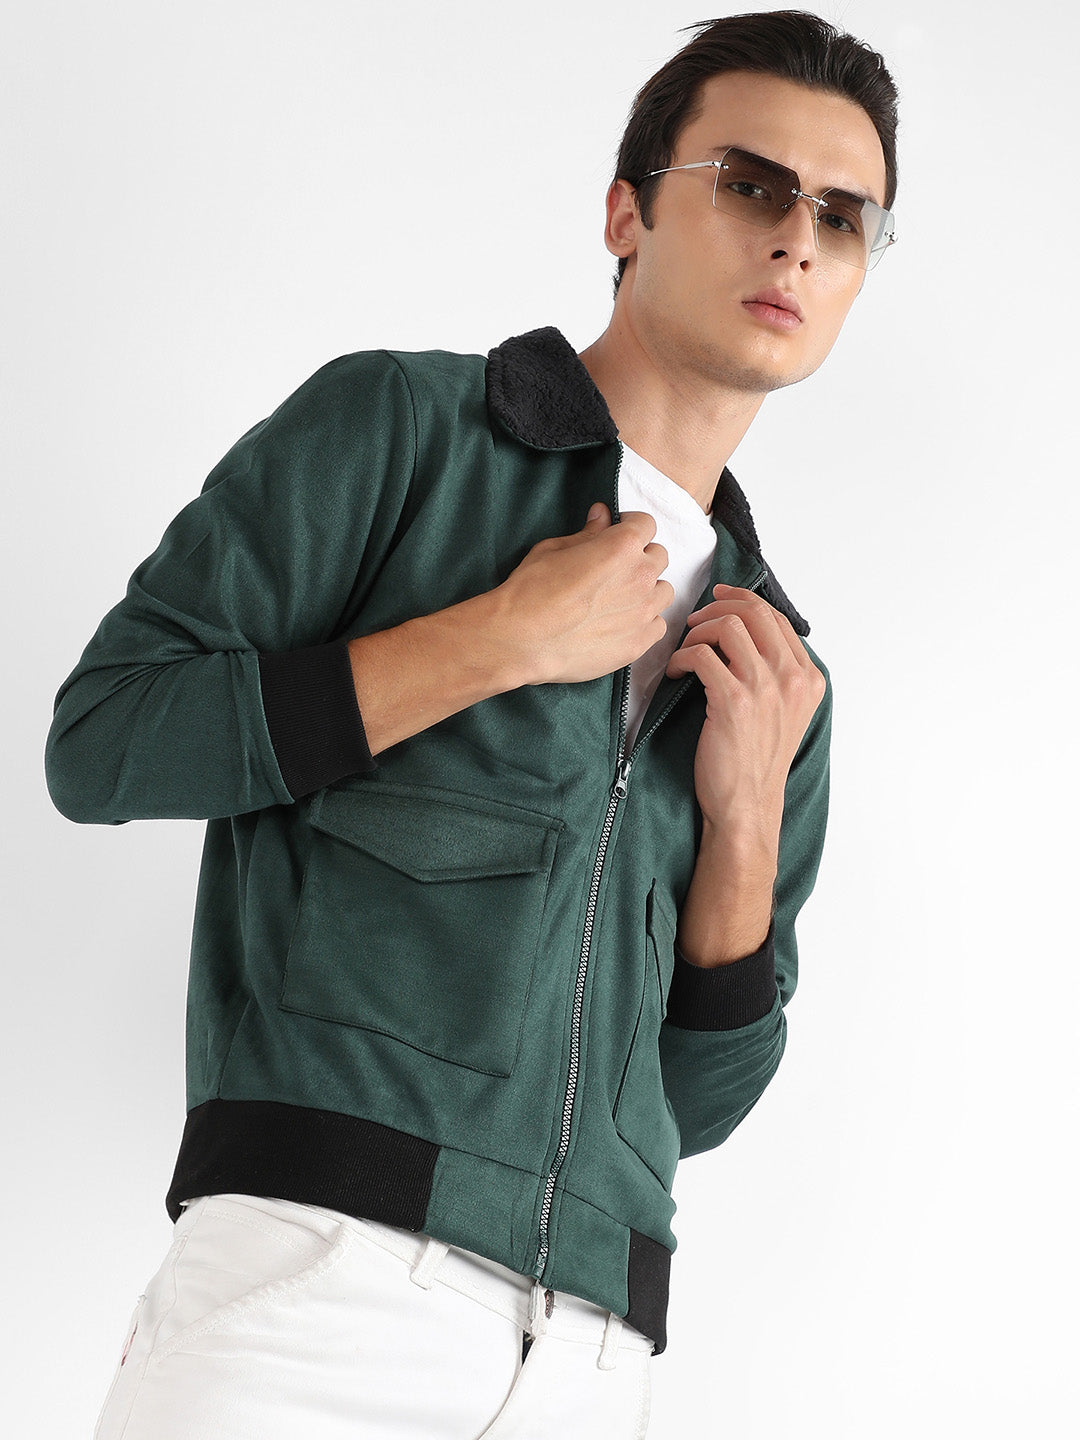 Zip-Front Jacket With Fleece Collar